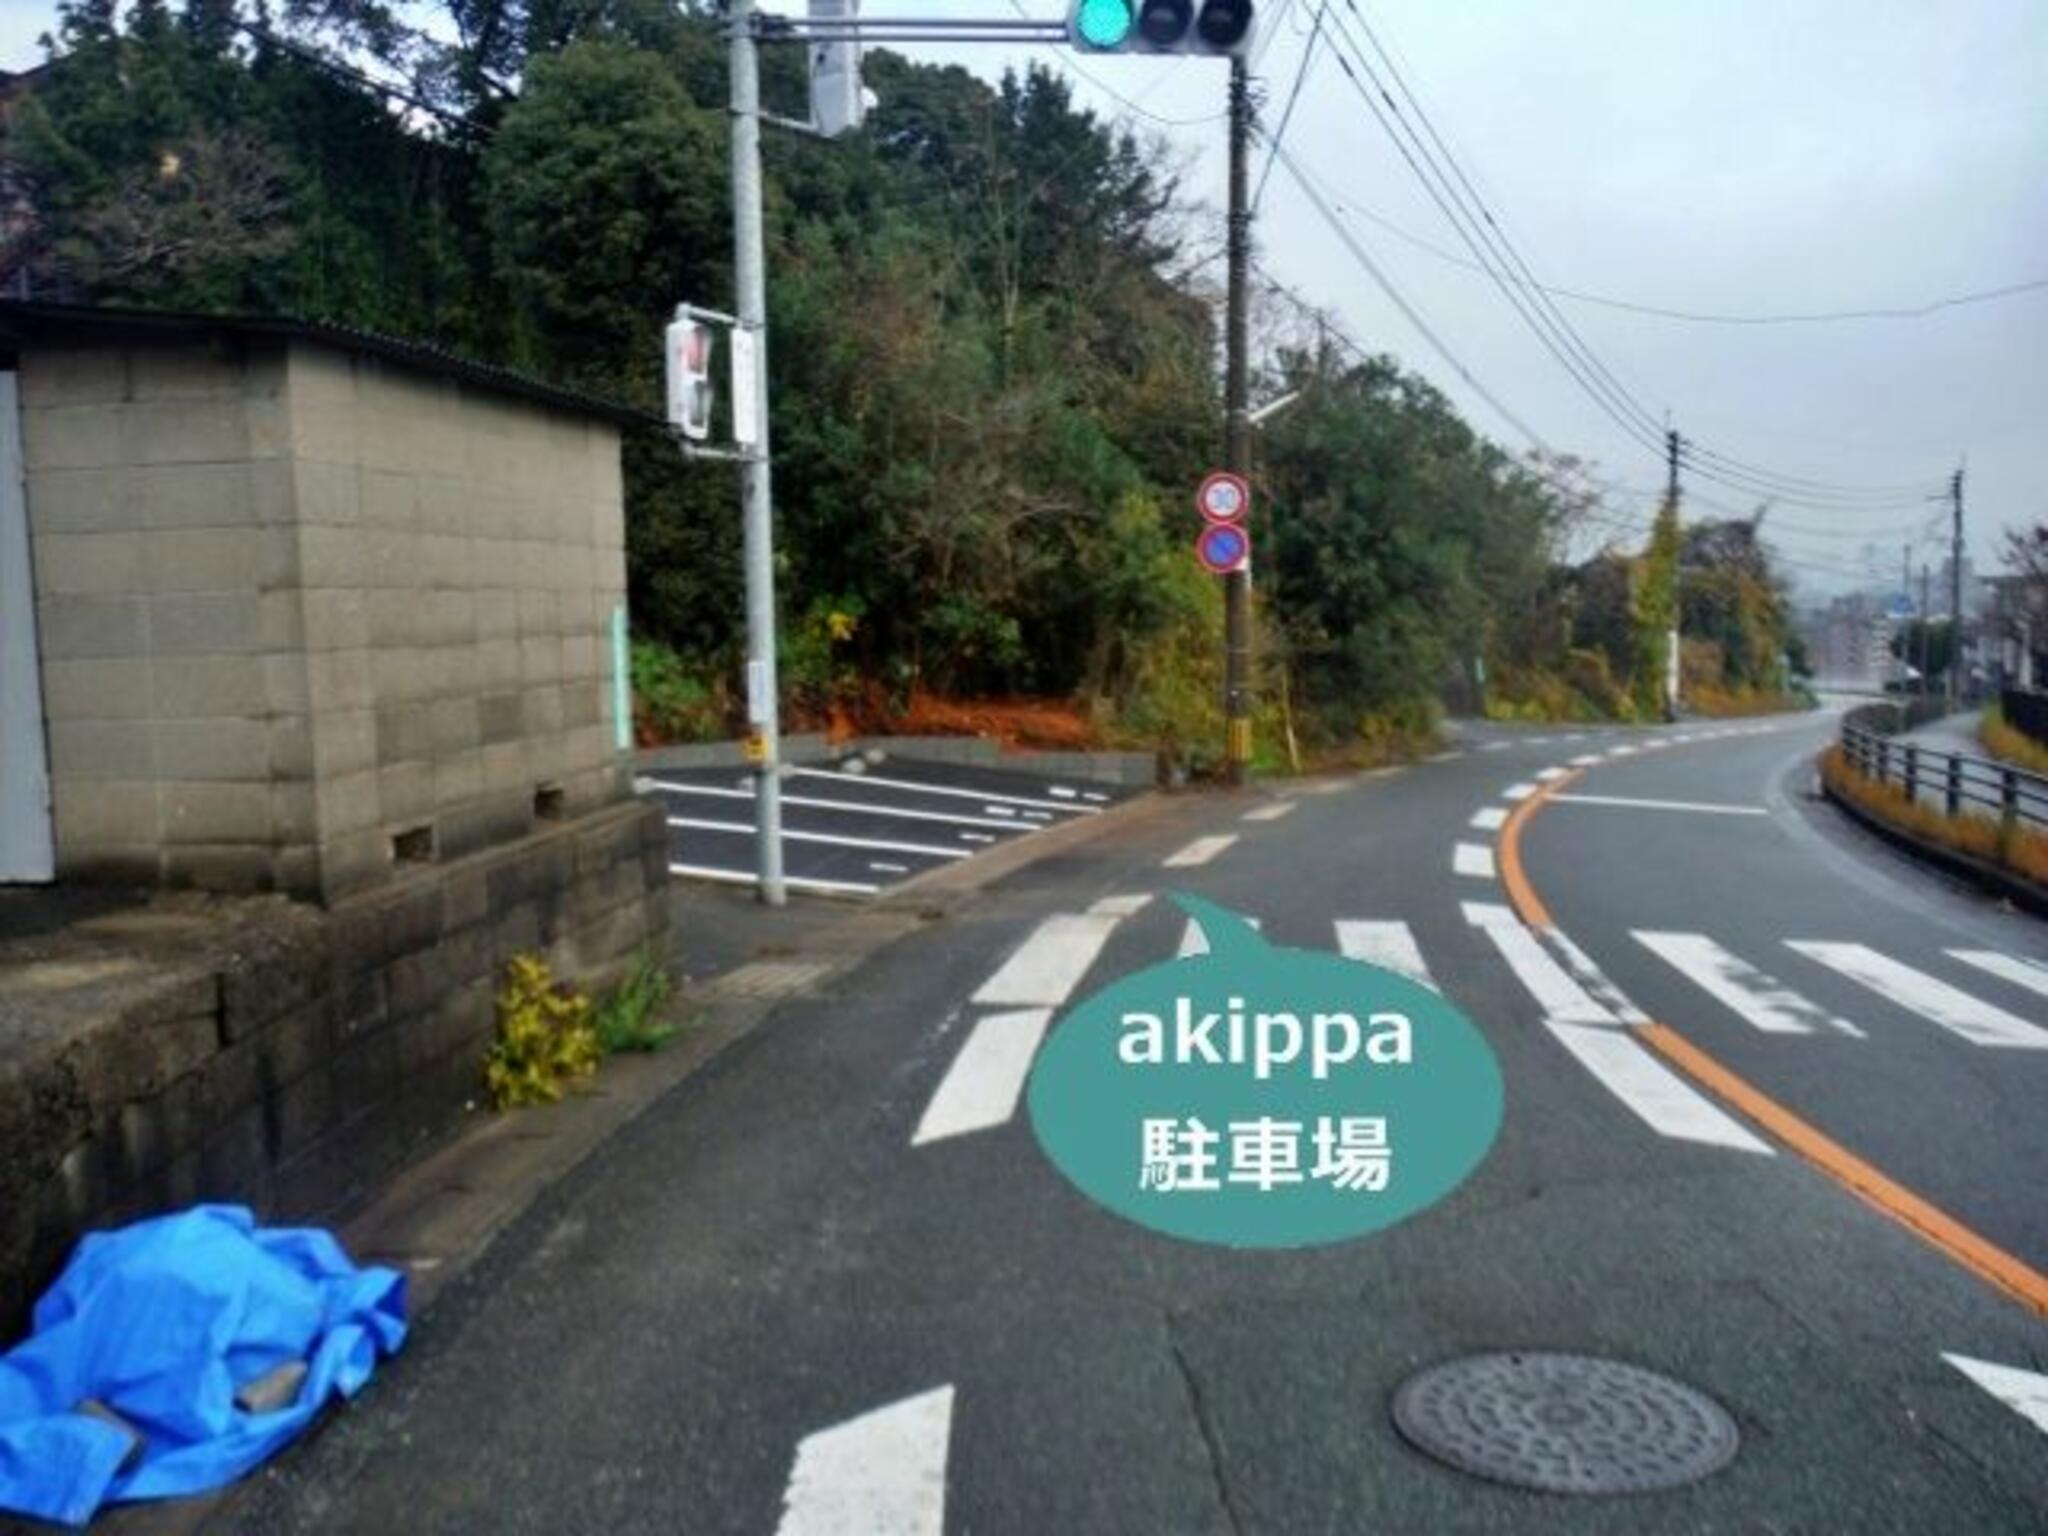 akippa駐車場:福岡県北九州市戸畑区菅原2丁目6-29の代表写真4